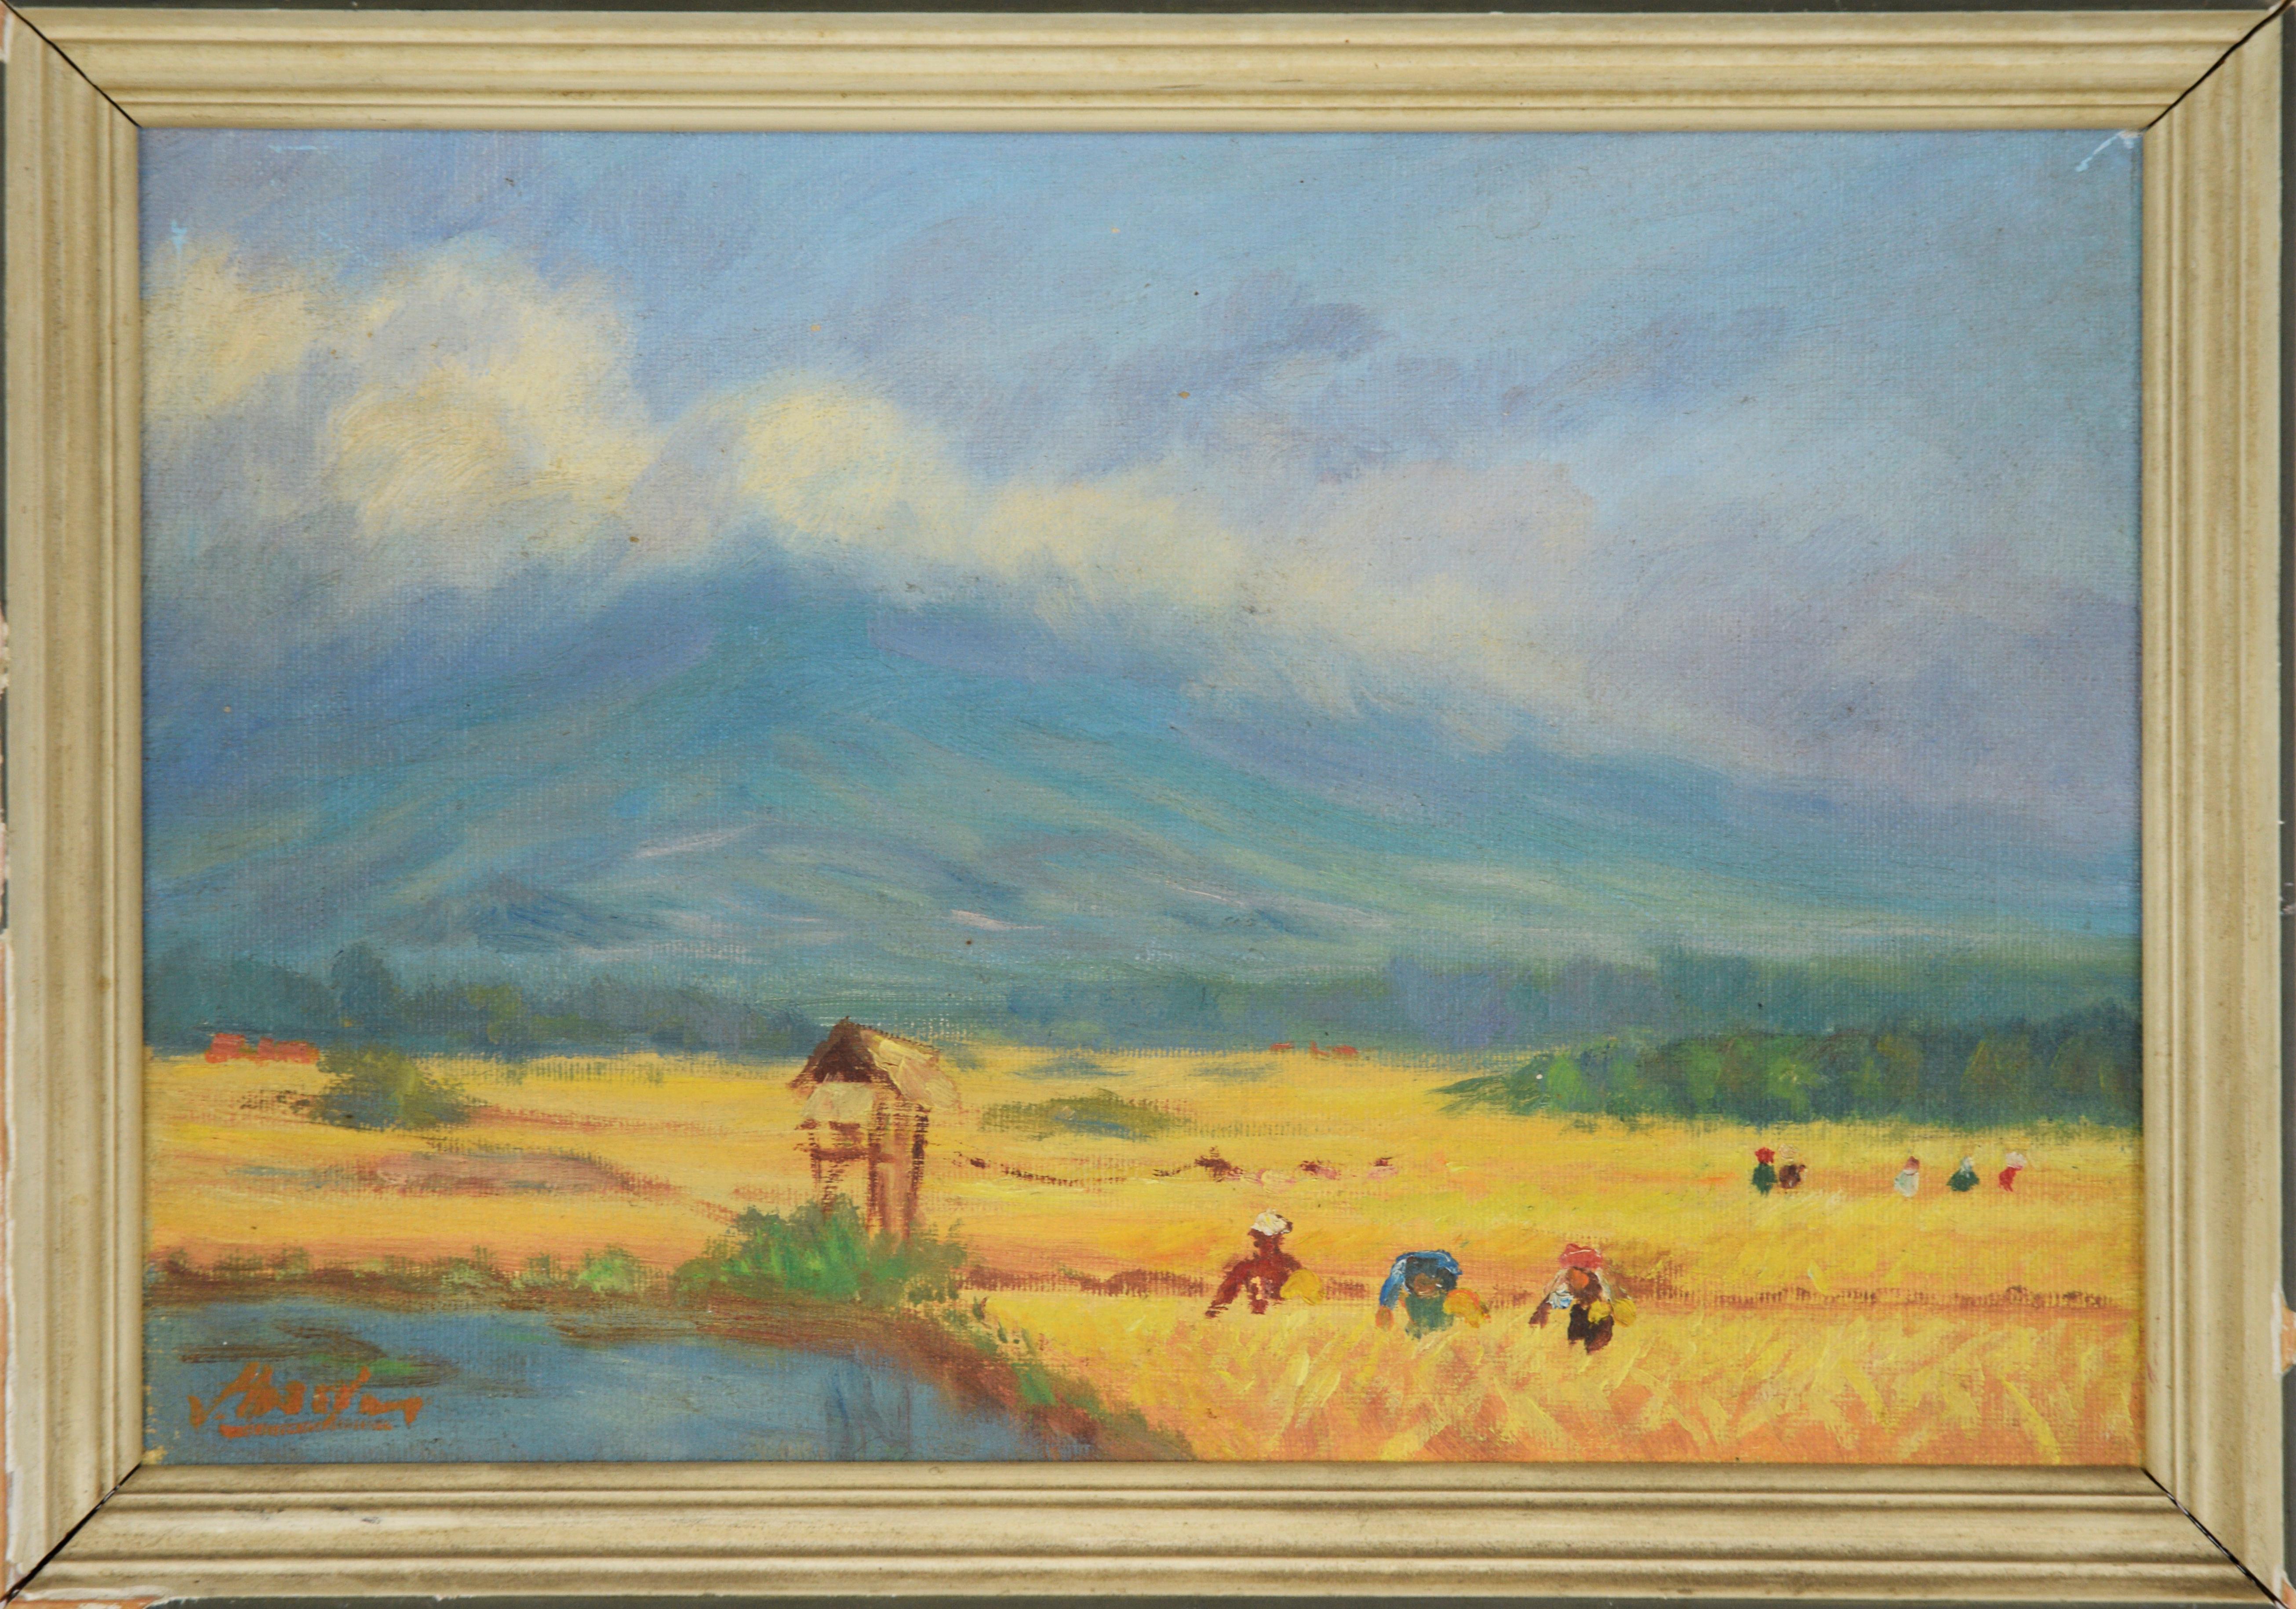 Von Hassler Landscape Painting - The Harvest - Dutch Farm Scene, Original Oil Painting On Canvas